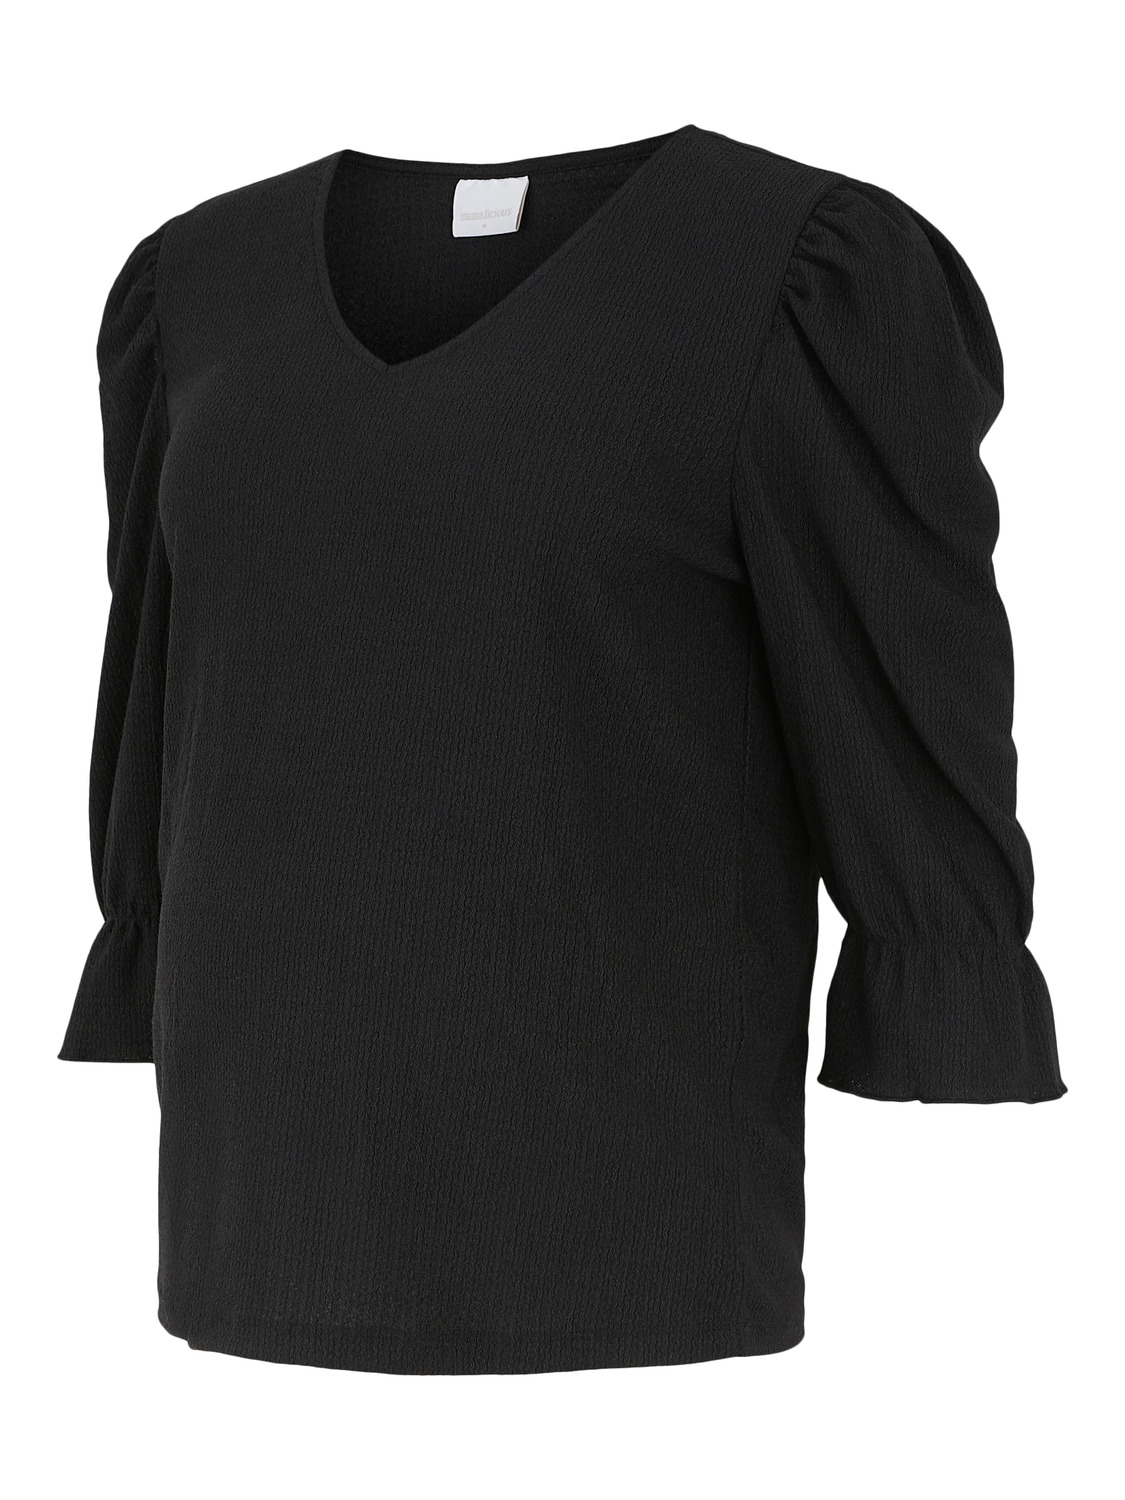 TuigO Odzież MAMALICIOUS Koszulka Bea w kolorze Czarnym 